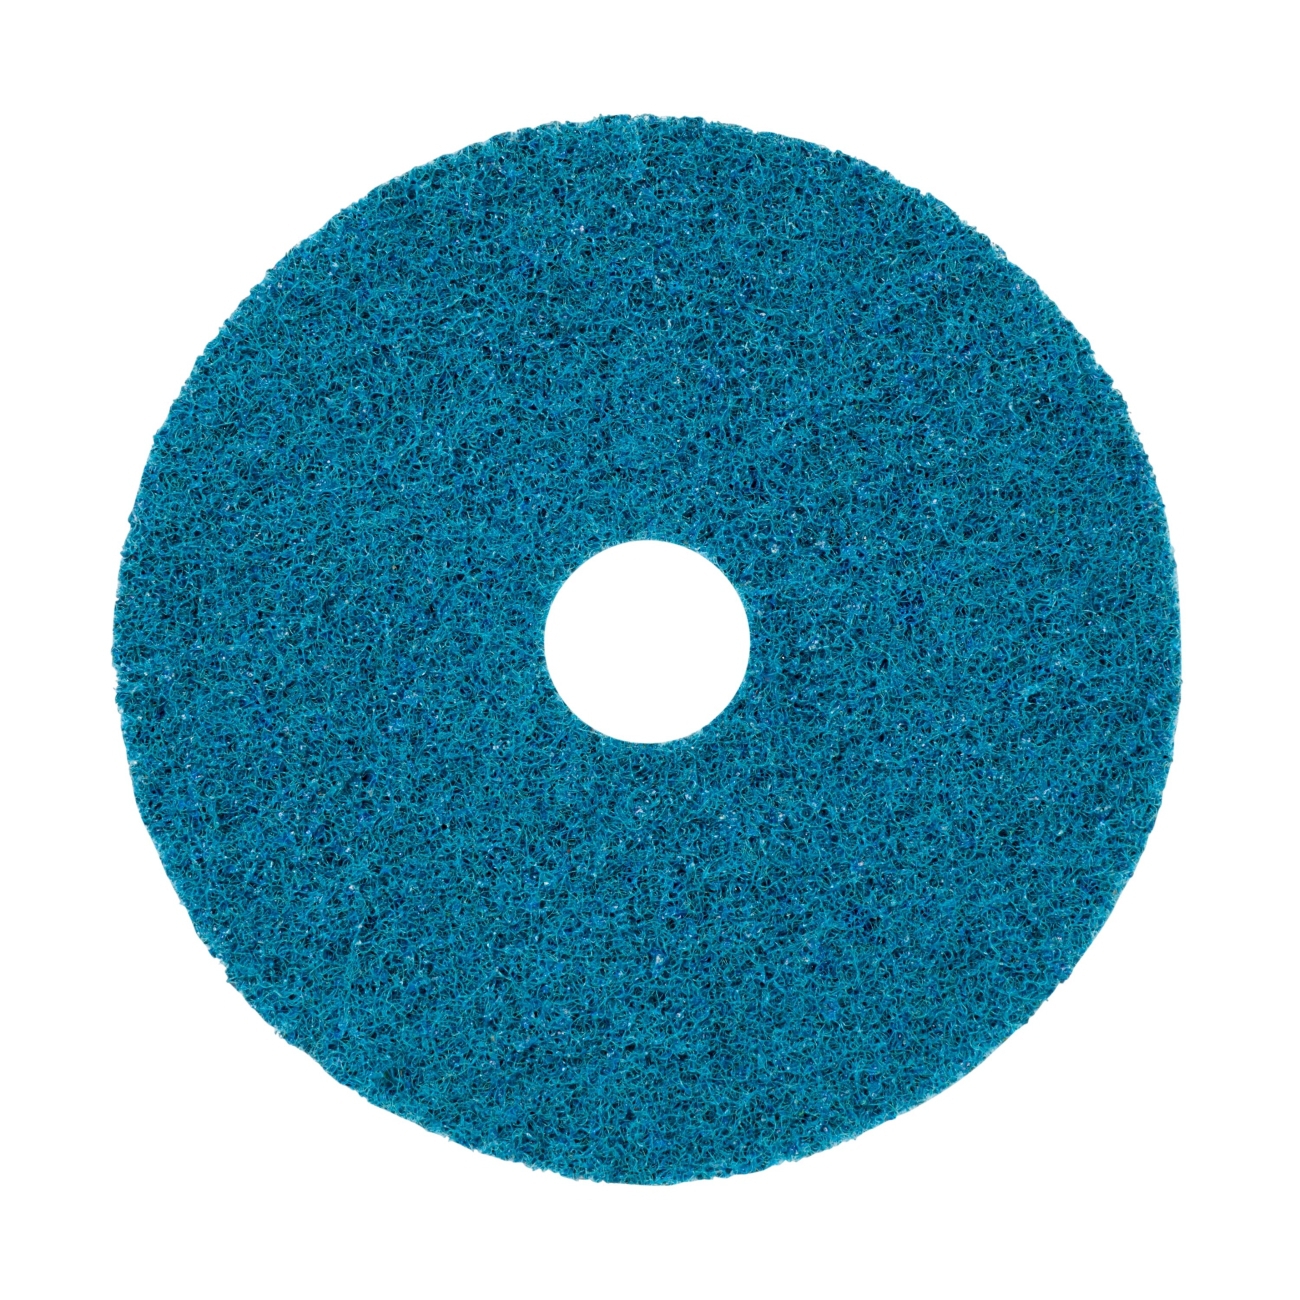 3M Scotch-Brite disco no tejido SC-DH con centrado, azul, 125 mm, 22 mm, A, muy fino #246591